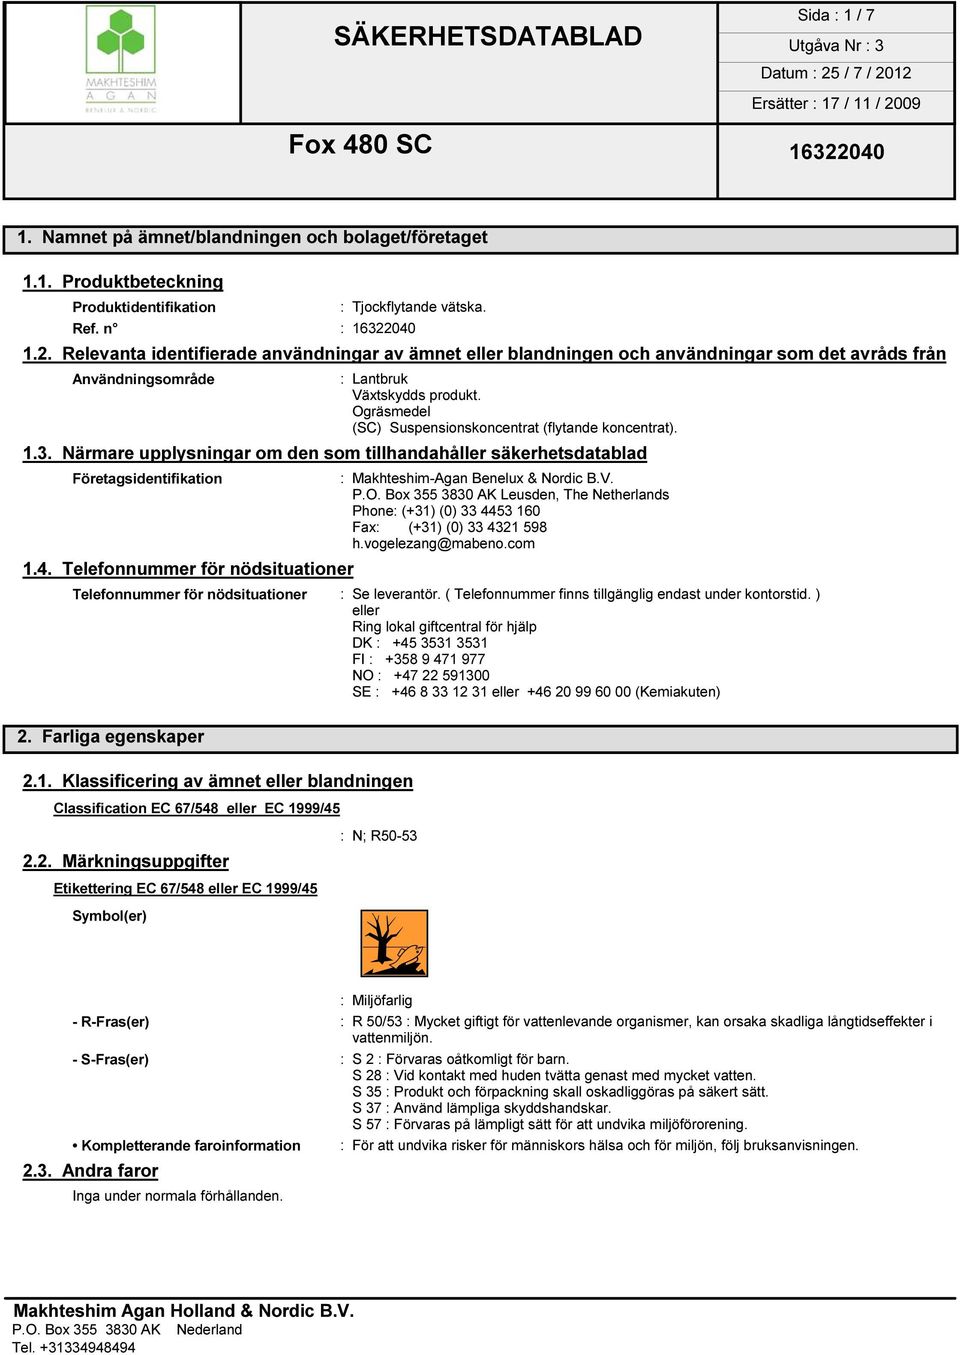 Ogräsmedel (SC) Suspensionskoncentrat (flytande koncentrat). 1.3. Närmare upplysningar om den som tillhandahåller säkerhetsdatablad Företagsidentifikation : Makhteshim-Agan Benelux & Nordic B.V. P.O. Box 355 3830 AK Leusden, The Netherlands Phone: (+31) (0) 33 4453 160 Fax: (+31) (0) 33 4321 598 h.